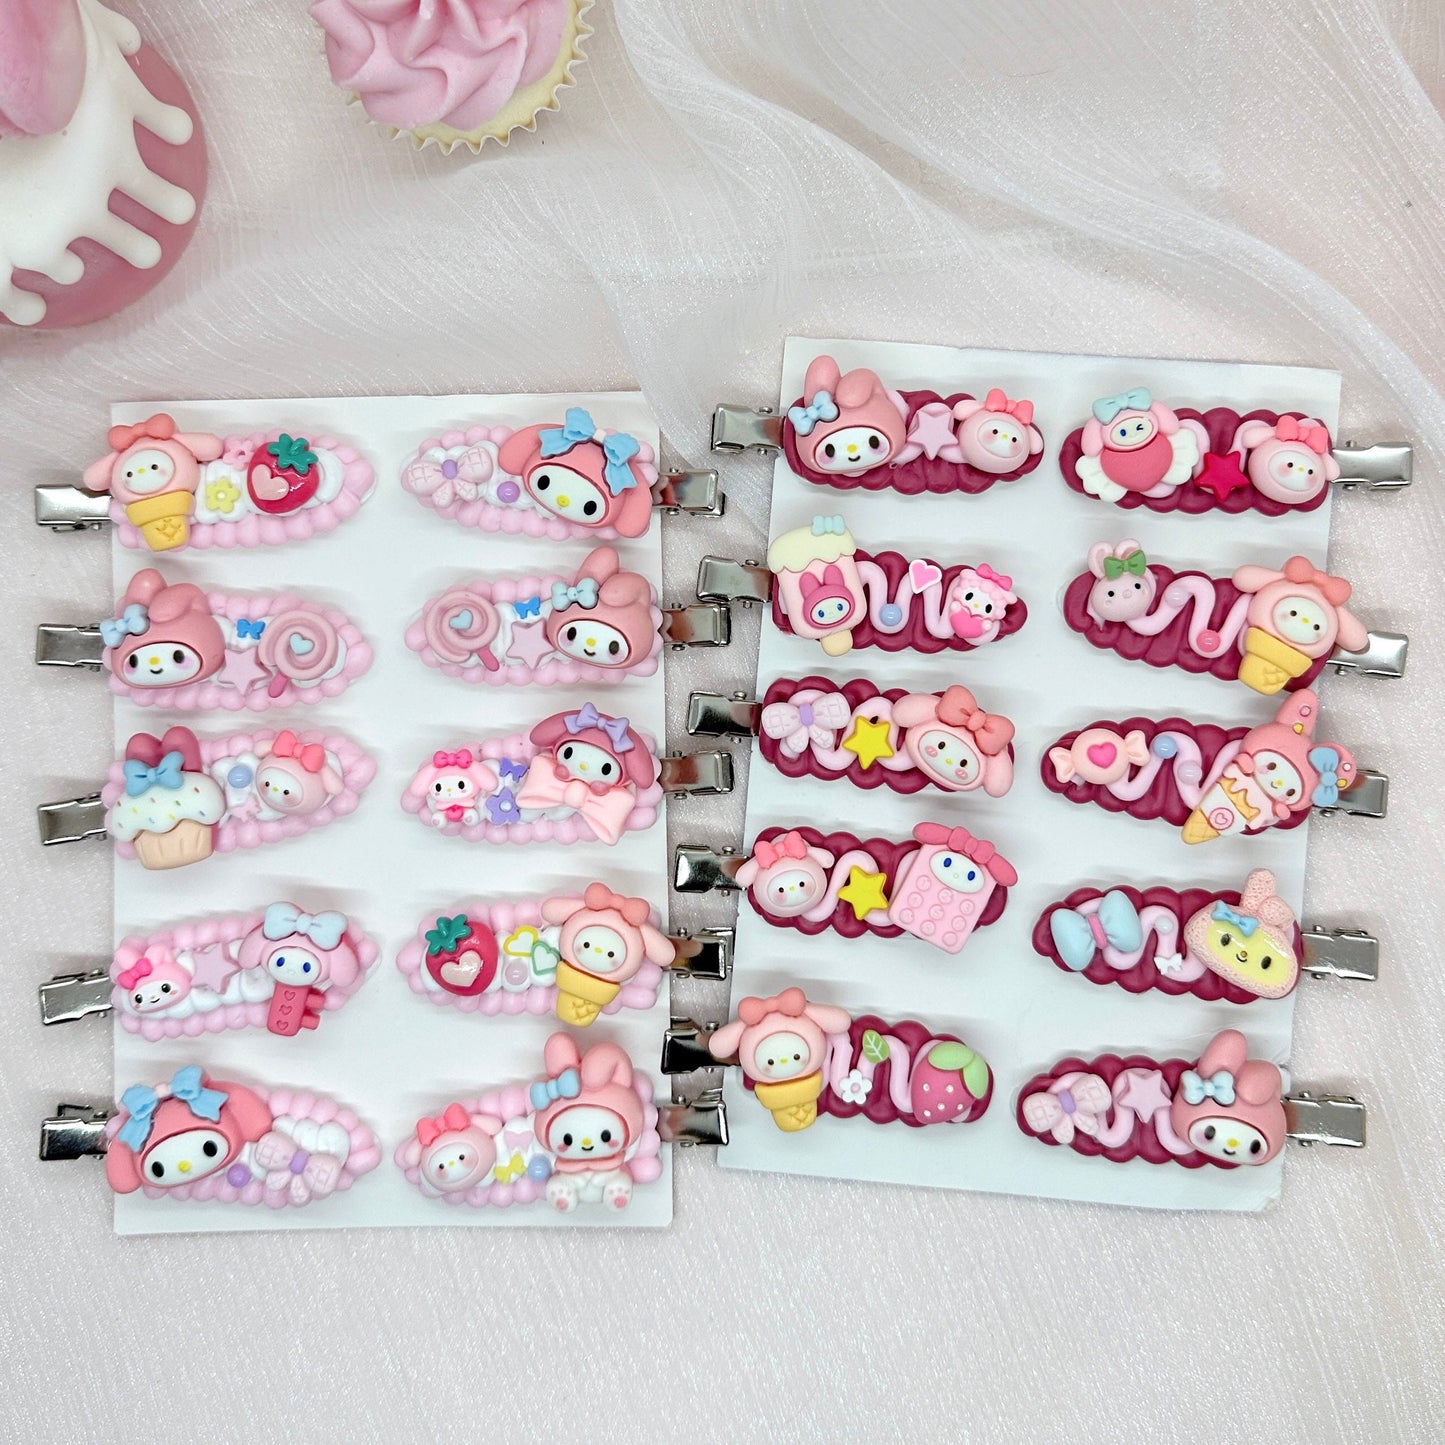 Kawaii My Melody hair clips, Handmade Sanrio Barrette, Cute Pink Hair Clips, Random 1, cute decoden hair accessories, each one is unique